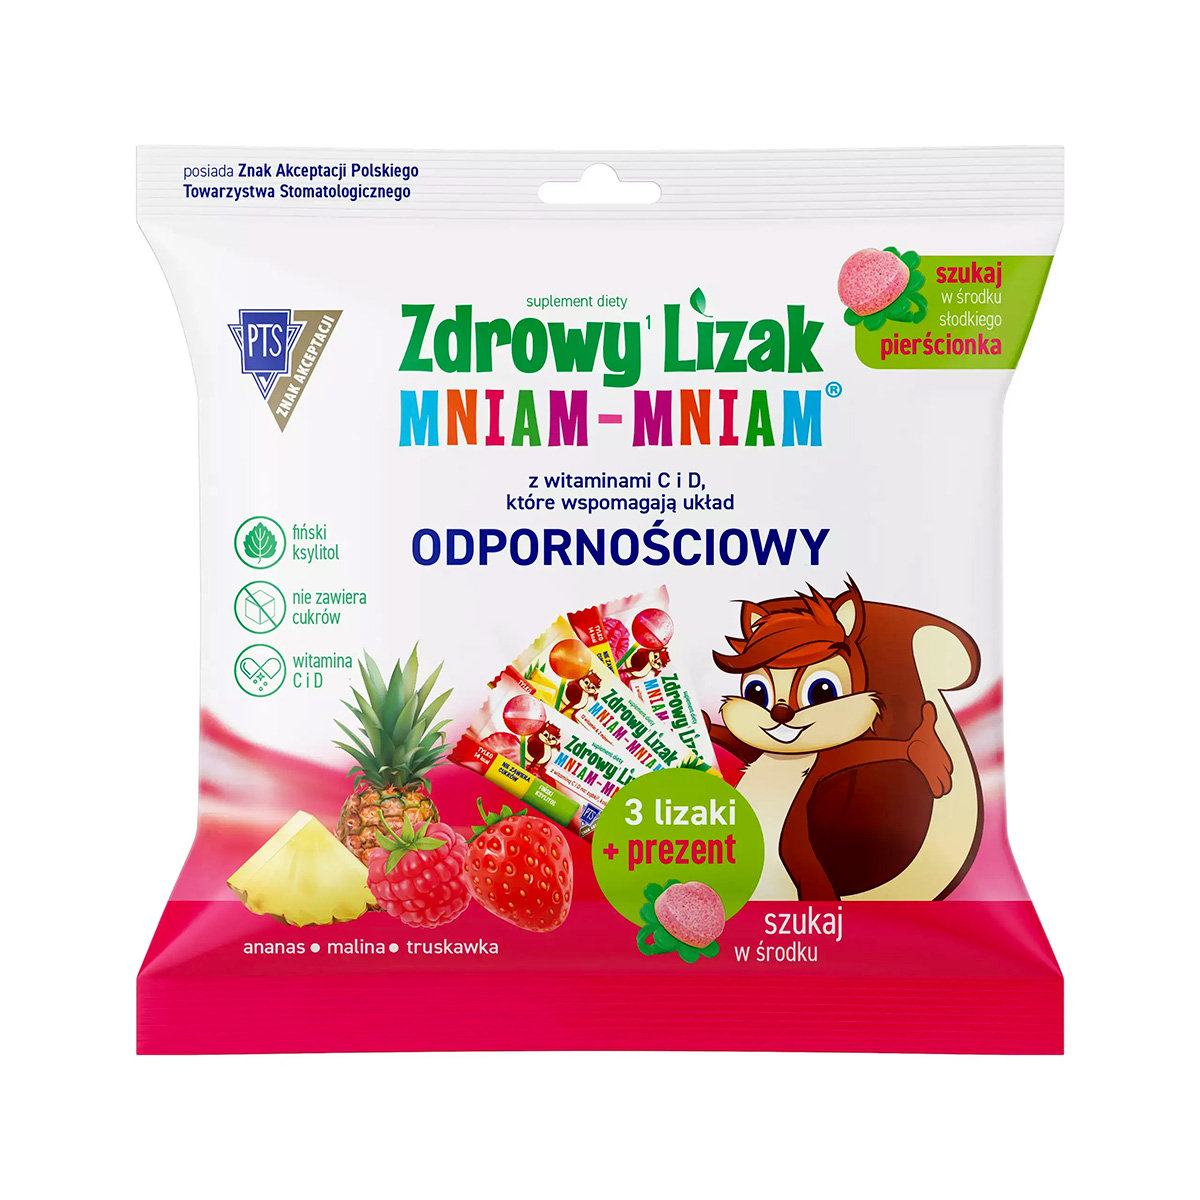 Starpharma Zdrowy lizak Mniam-Mniam z witaminą C i D o smaku ananasowym, malinowym i truskawkowym 3 sztuki + prezent 3738721